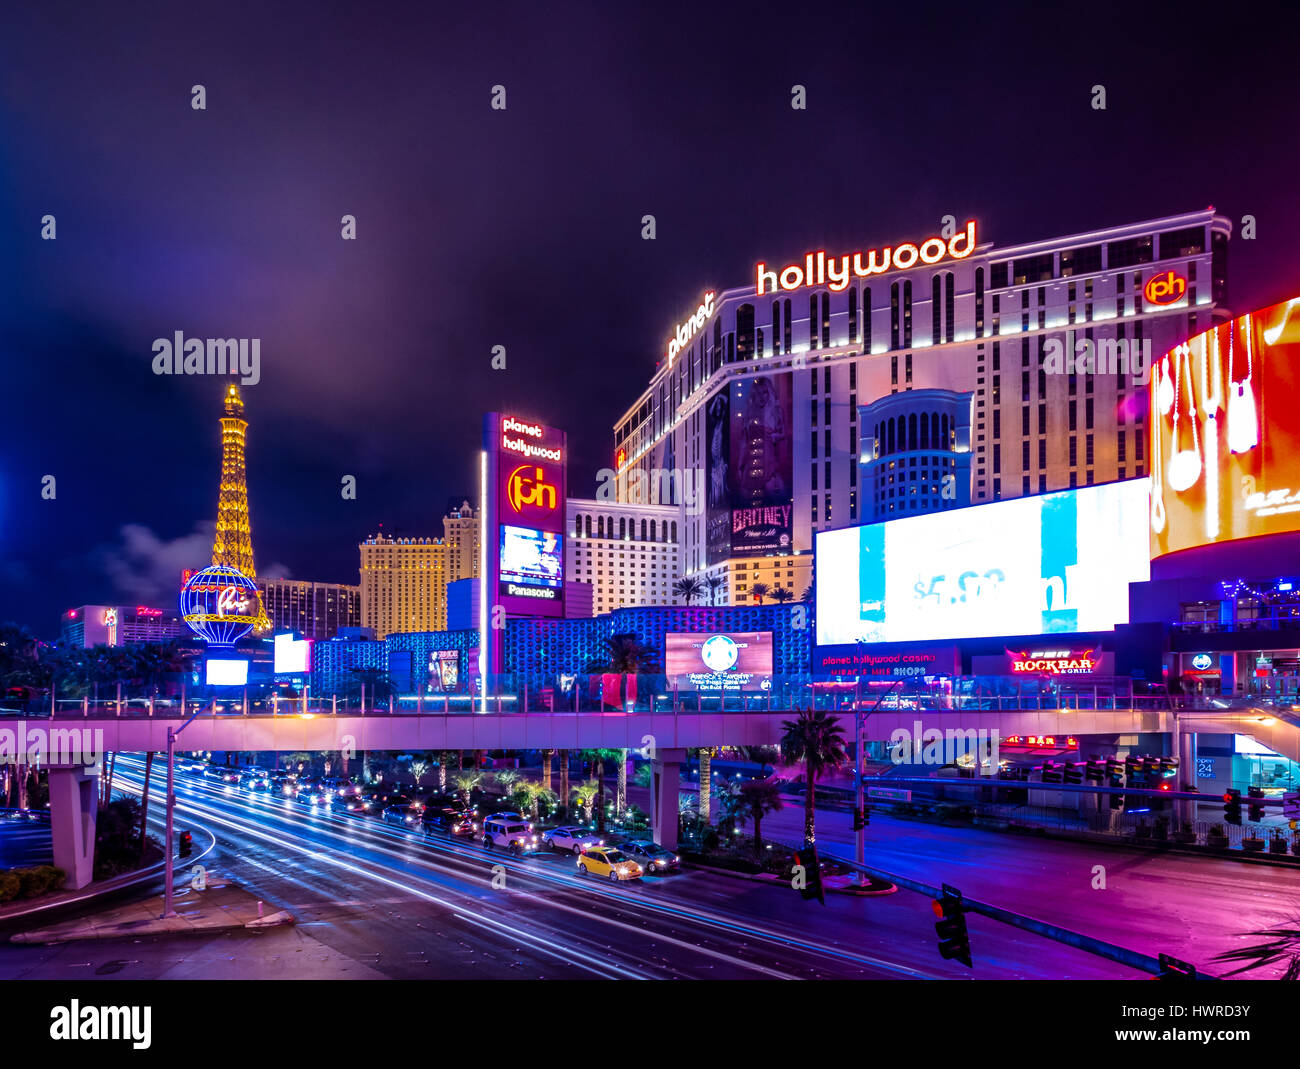 Las Vegas Strip at Night - Las Vegas, Nevada, USA Stock Photo